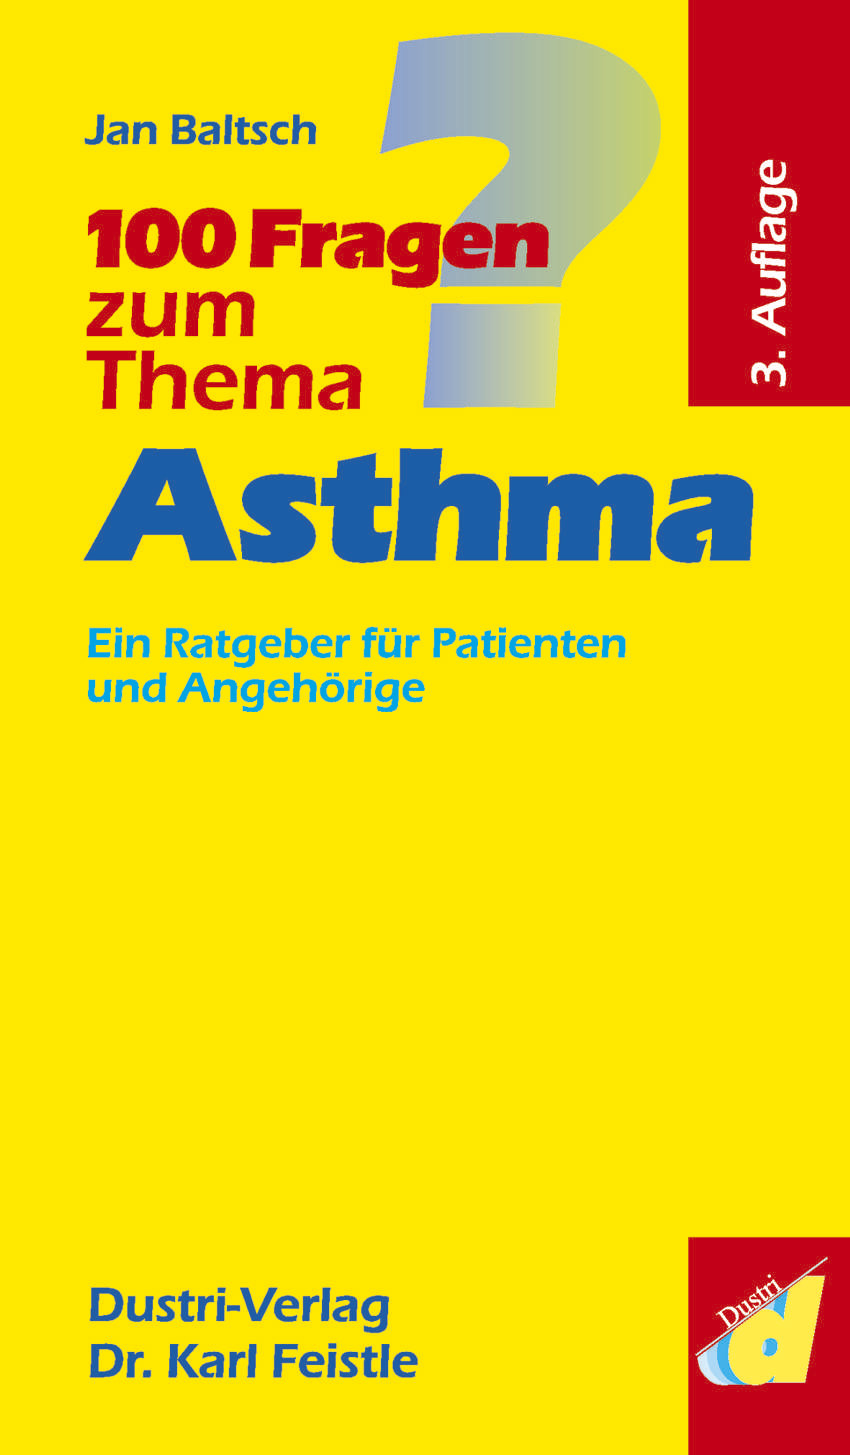 100 Fragen zum Thema Asthma (3. Auflage)